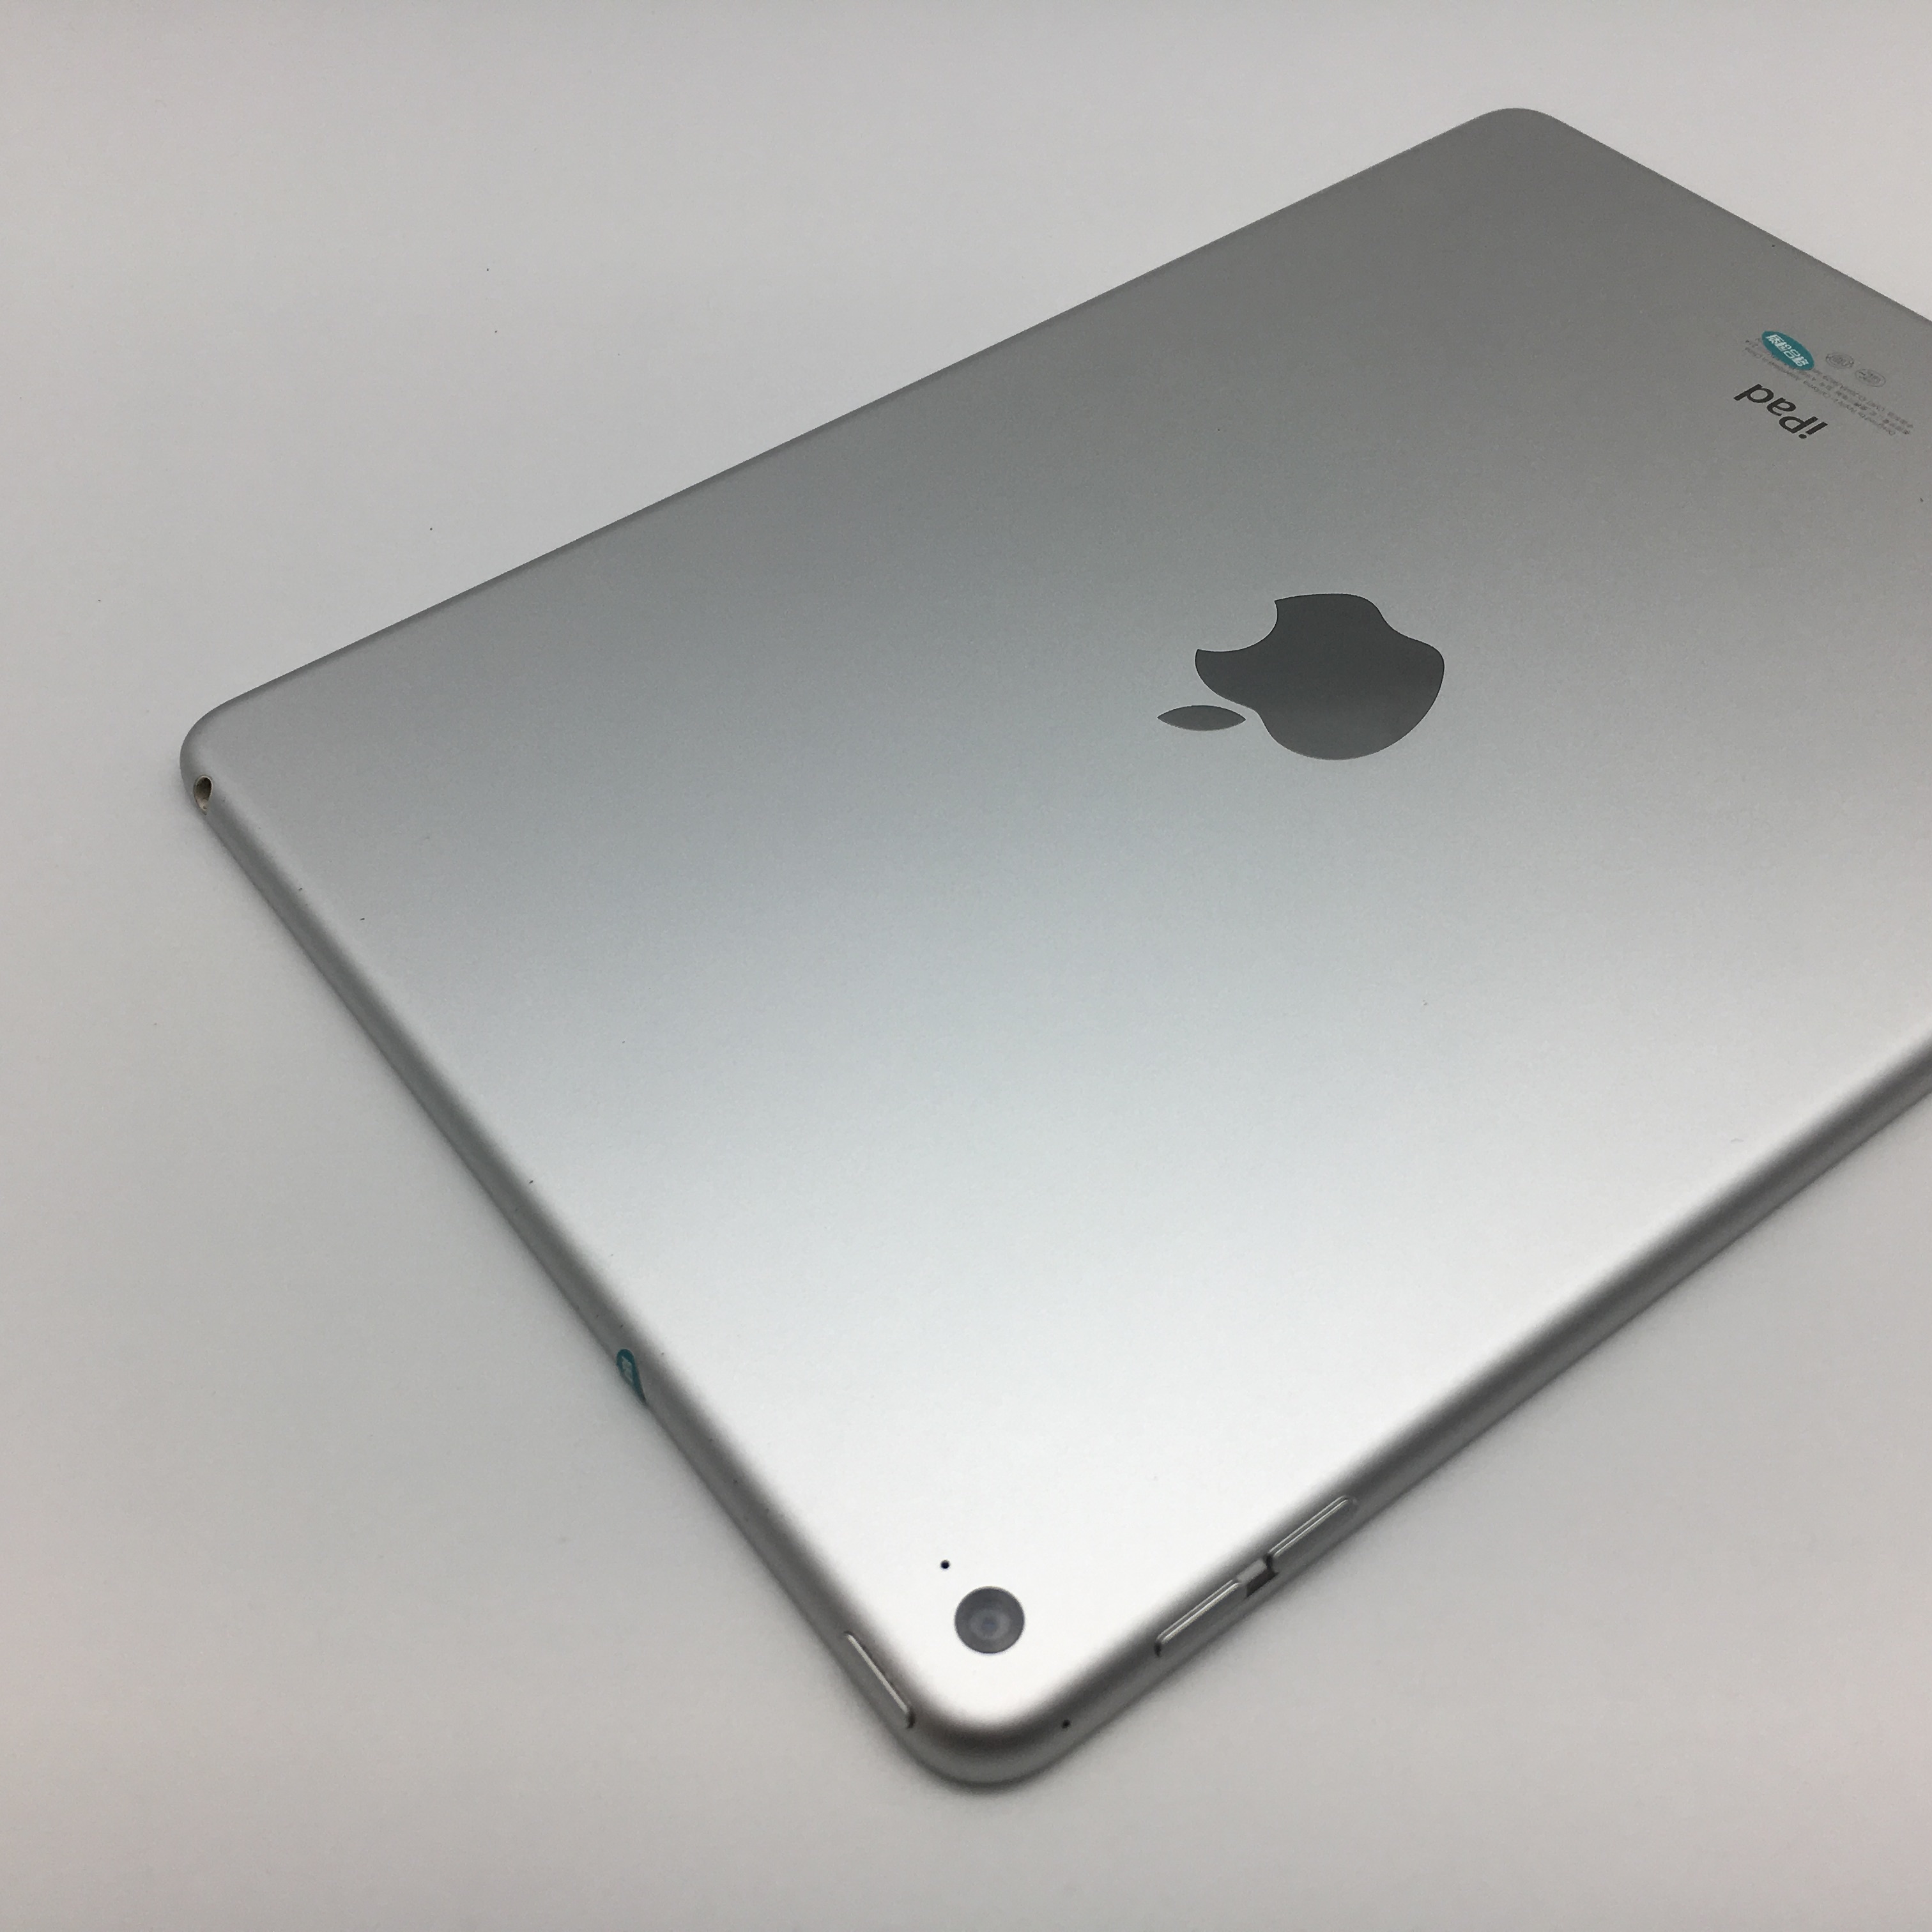 苹果【ipad air2】wifi版 银色 64g 国行 8成新 真机实拍